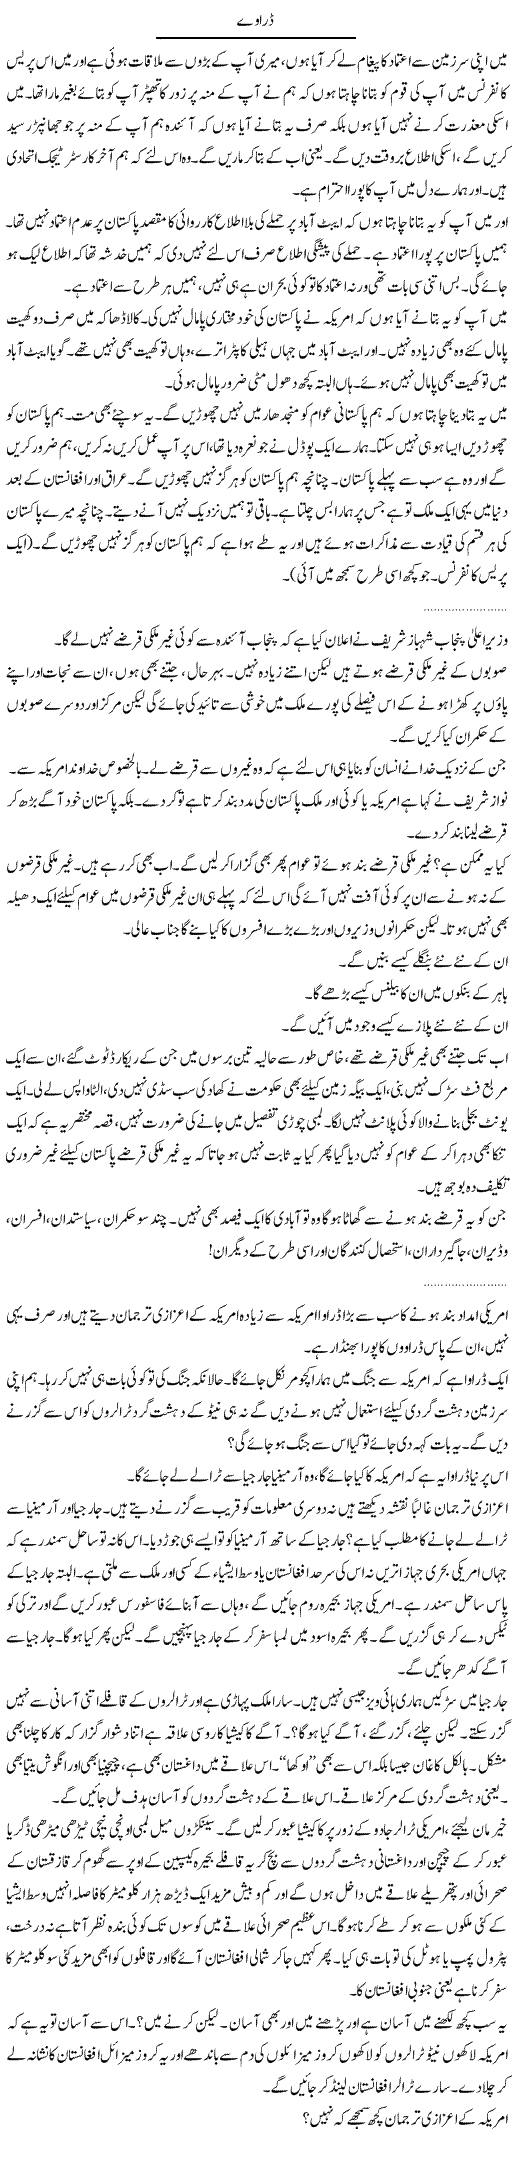 Threats To Pakistan Express Column Abdullah Tariq 18 May 2011